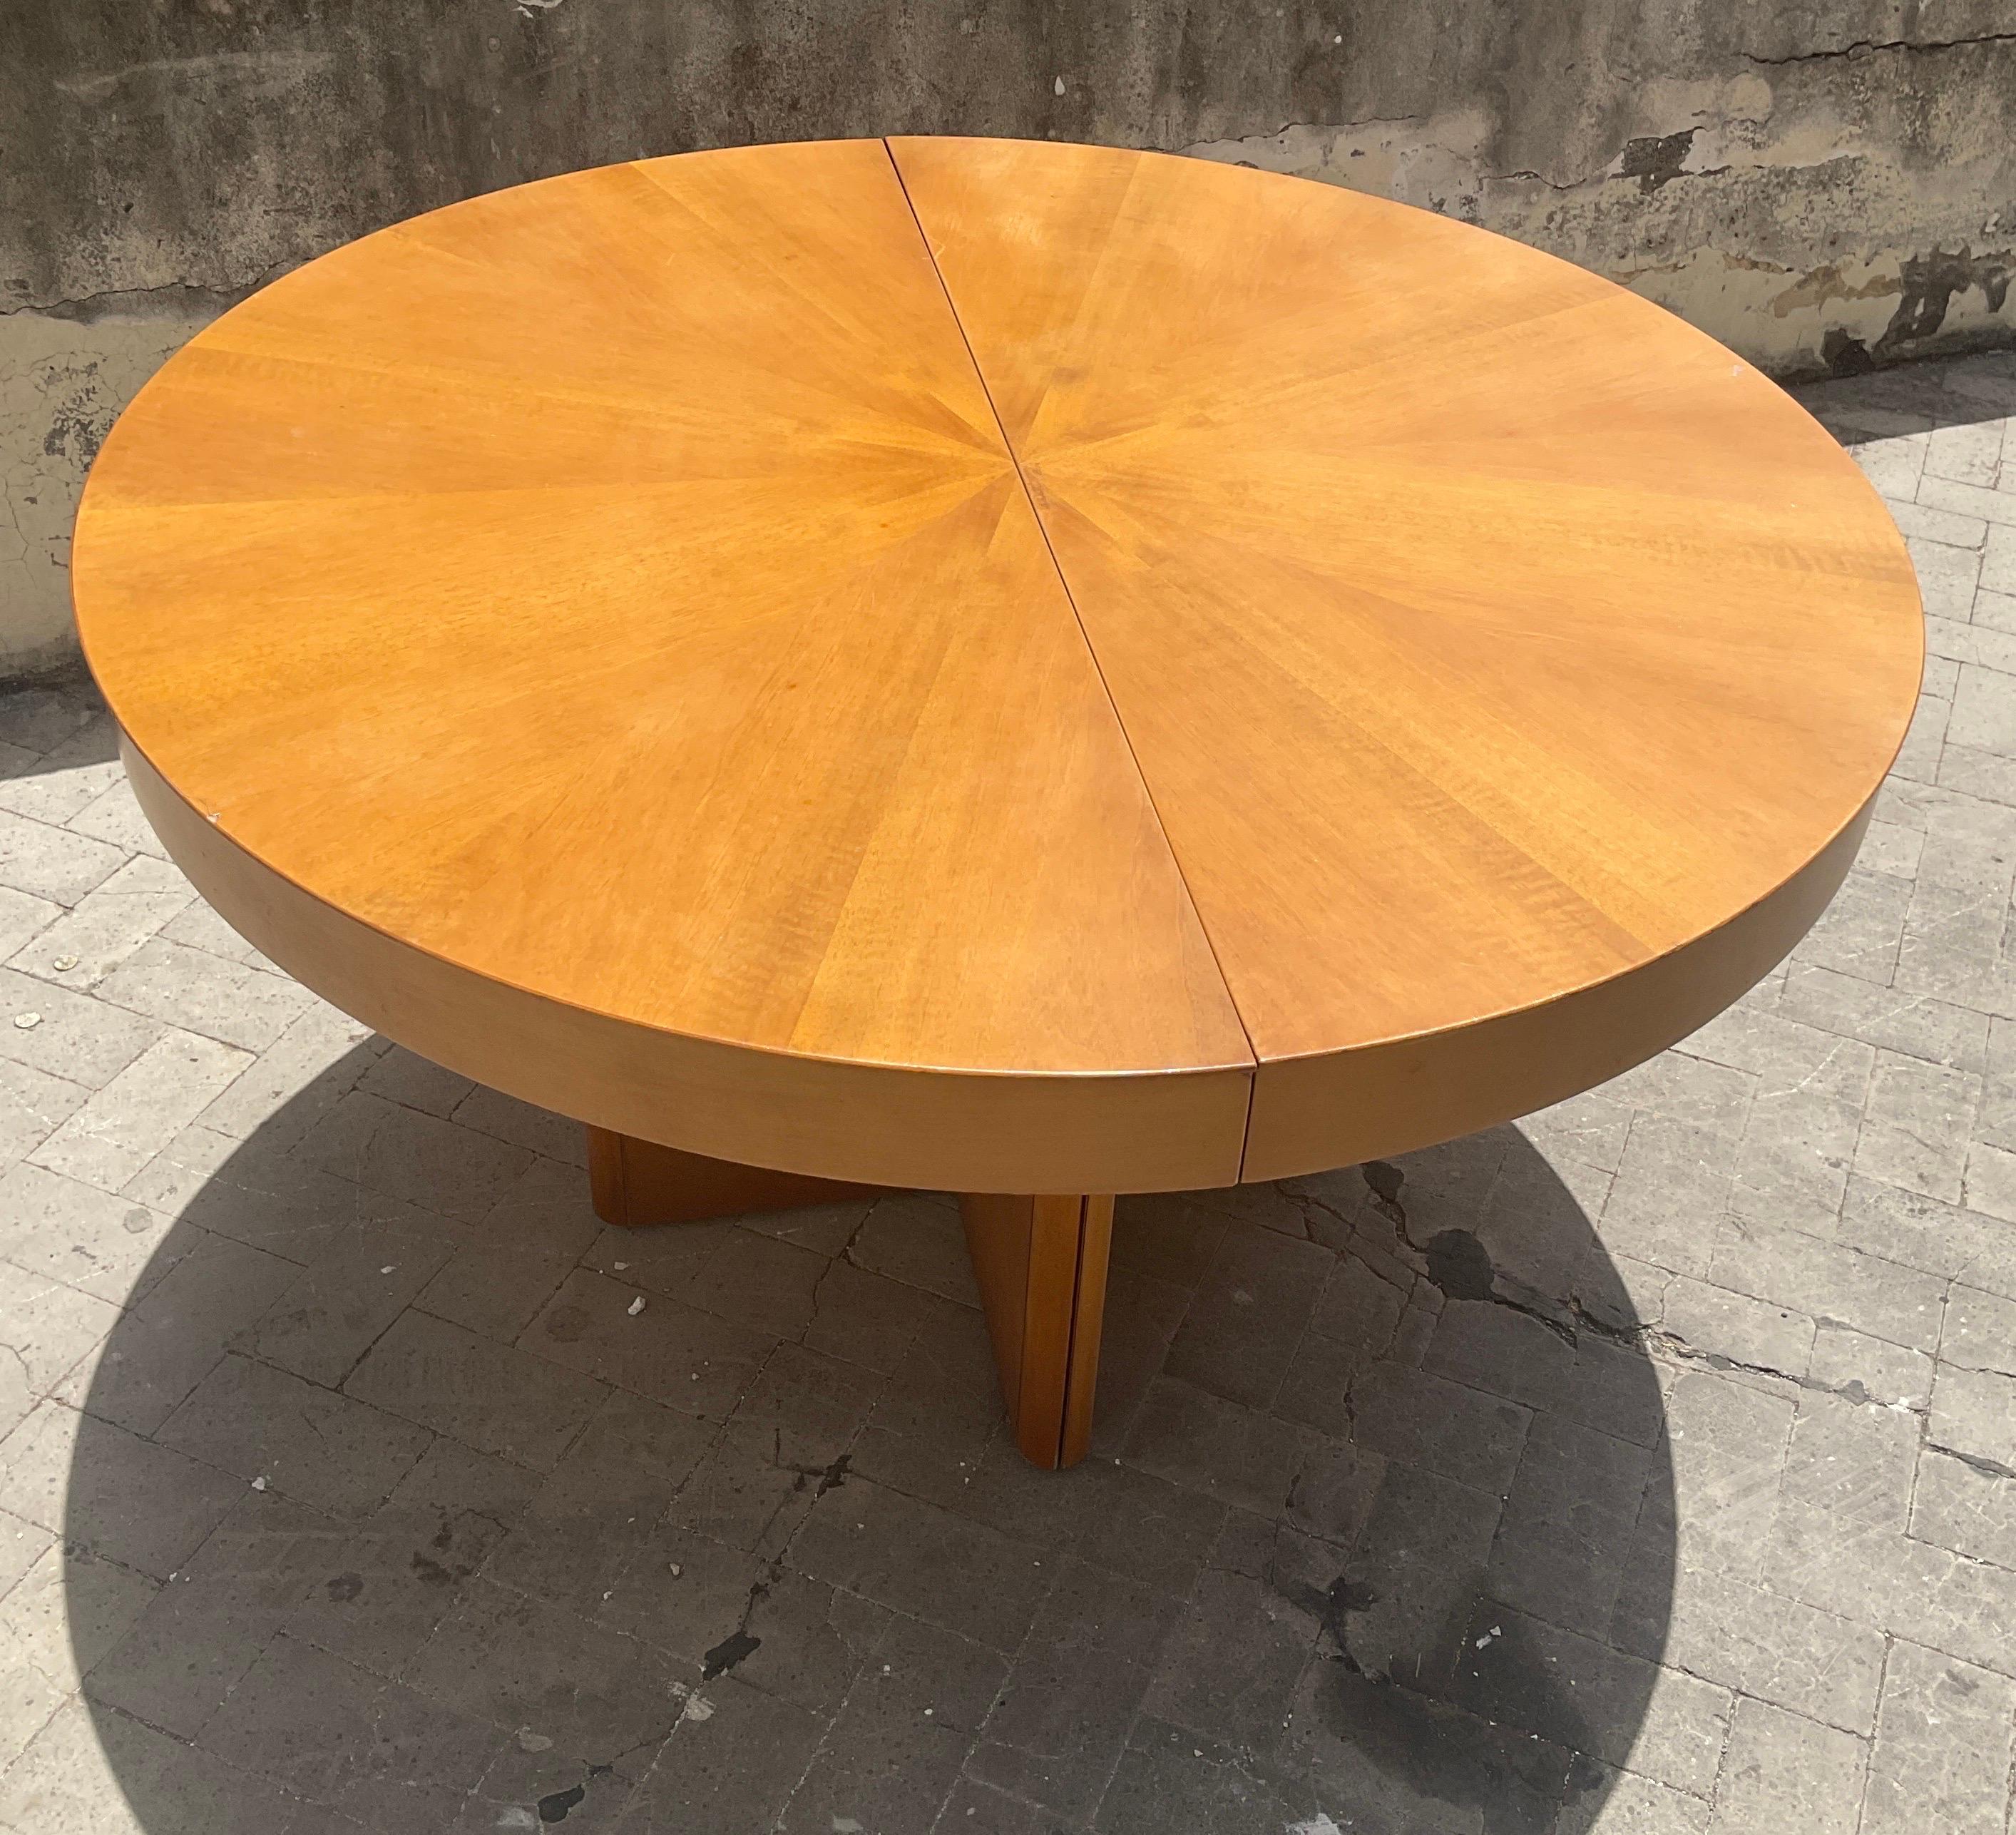 Late 20th Century Fiorenza extendible round table in walnut by Tito Agnoli for Molteni, 70s